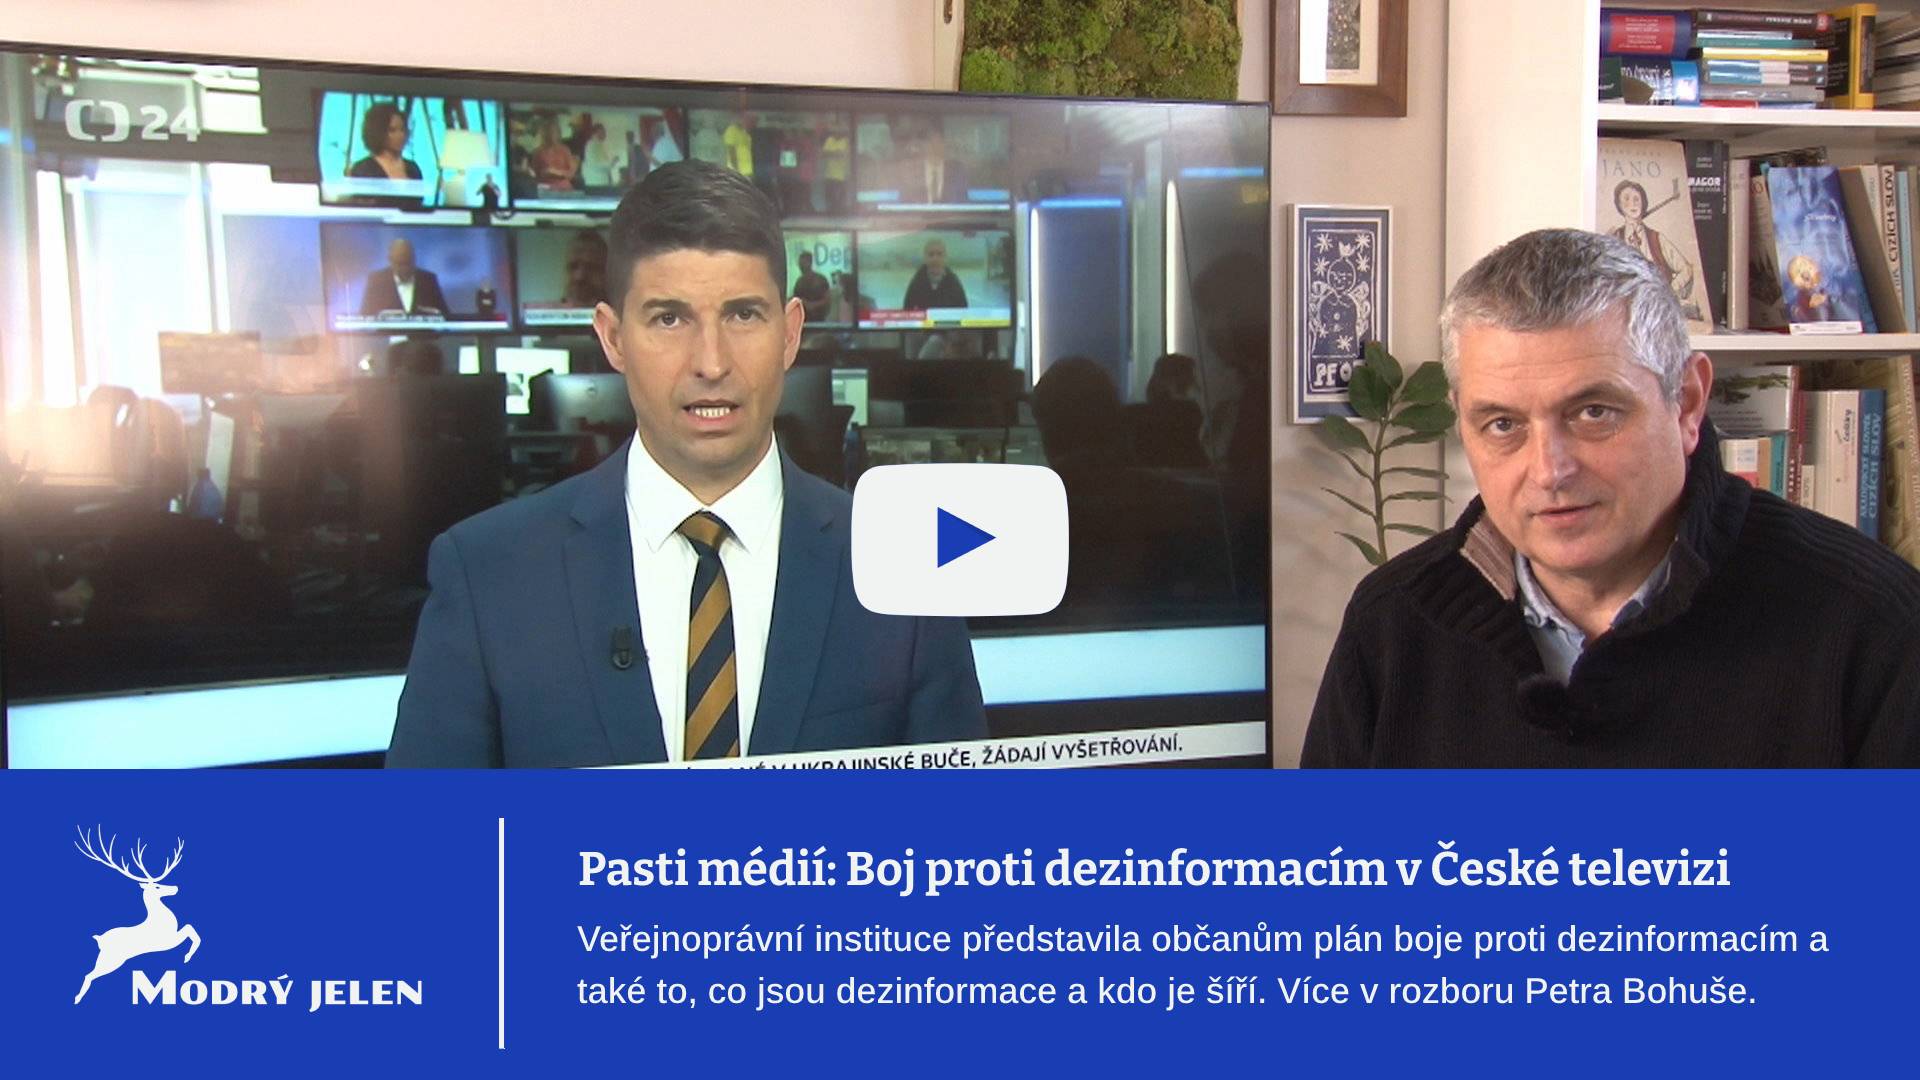 Pasti médií: Boj proti dezinformacím v České televizi. Podle jediné pravdy